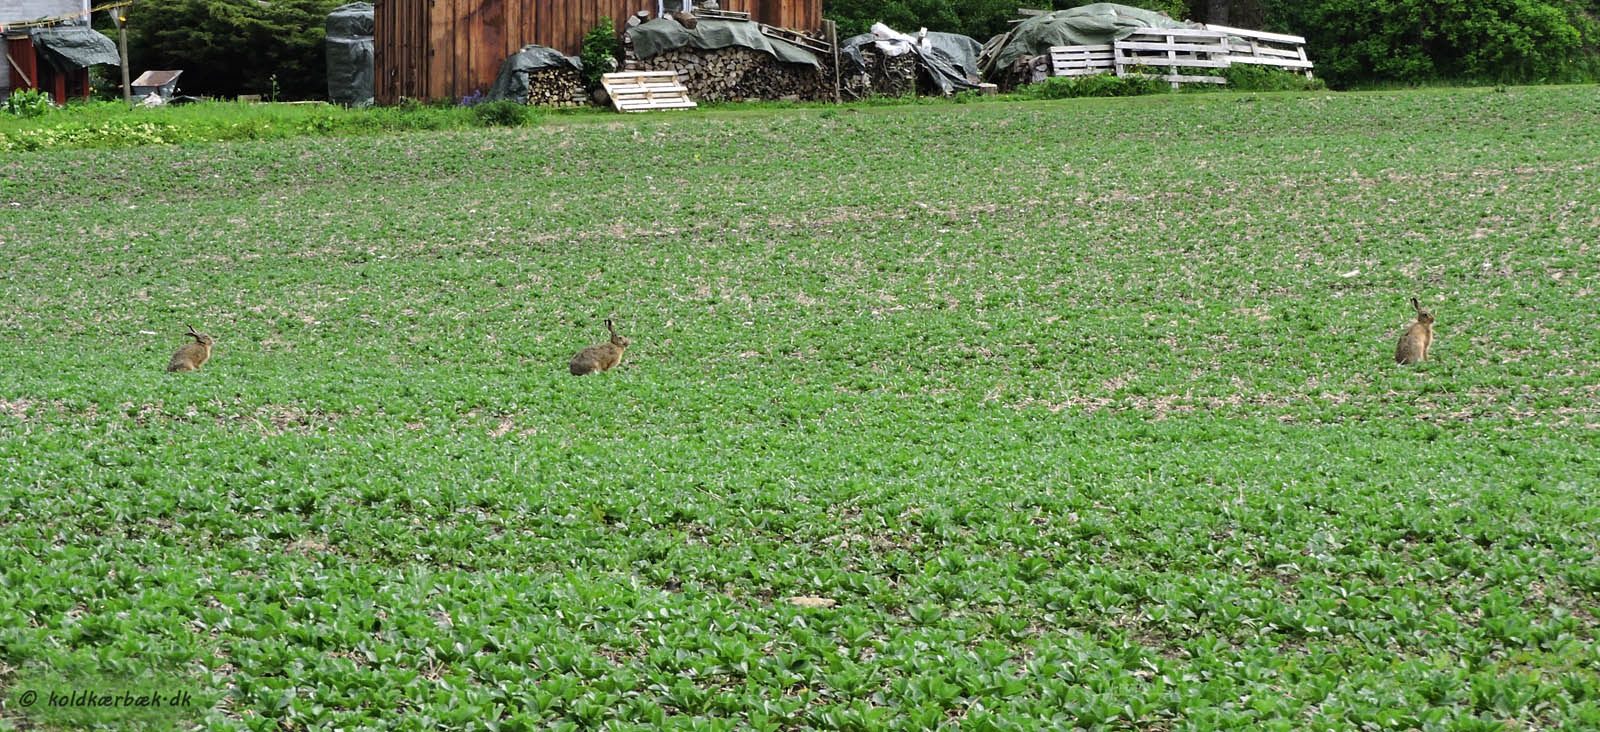 Harer på mark med Hestebønner ved Koldkær Bæk. 23-5-2015. Harerne synes at befinde sig godt på markerne med Hestebønner. Om de spiser af dem er ikke observeret. Det kan også være forhold som at afgrøden er lav og åben i lang tid, som tiltaler Haren ? I 2015 blev en del marker omkring Koldkær Bæk dyrket med Hestebønner. En relativ ny afgrøde i Danmark med højt proteinindhold, som i husdyrsfoderet kan erstatte Soja. Det sparer transport /CO2 i forhold til import af Soja fra varmere himmelstrøg. 